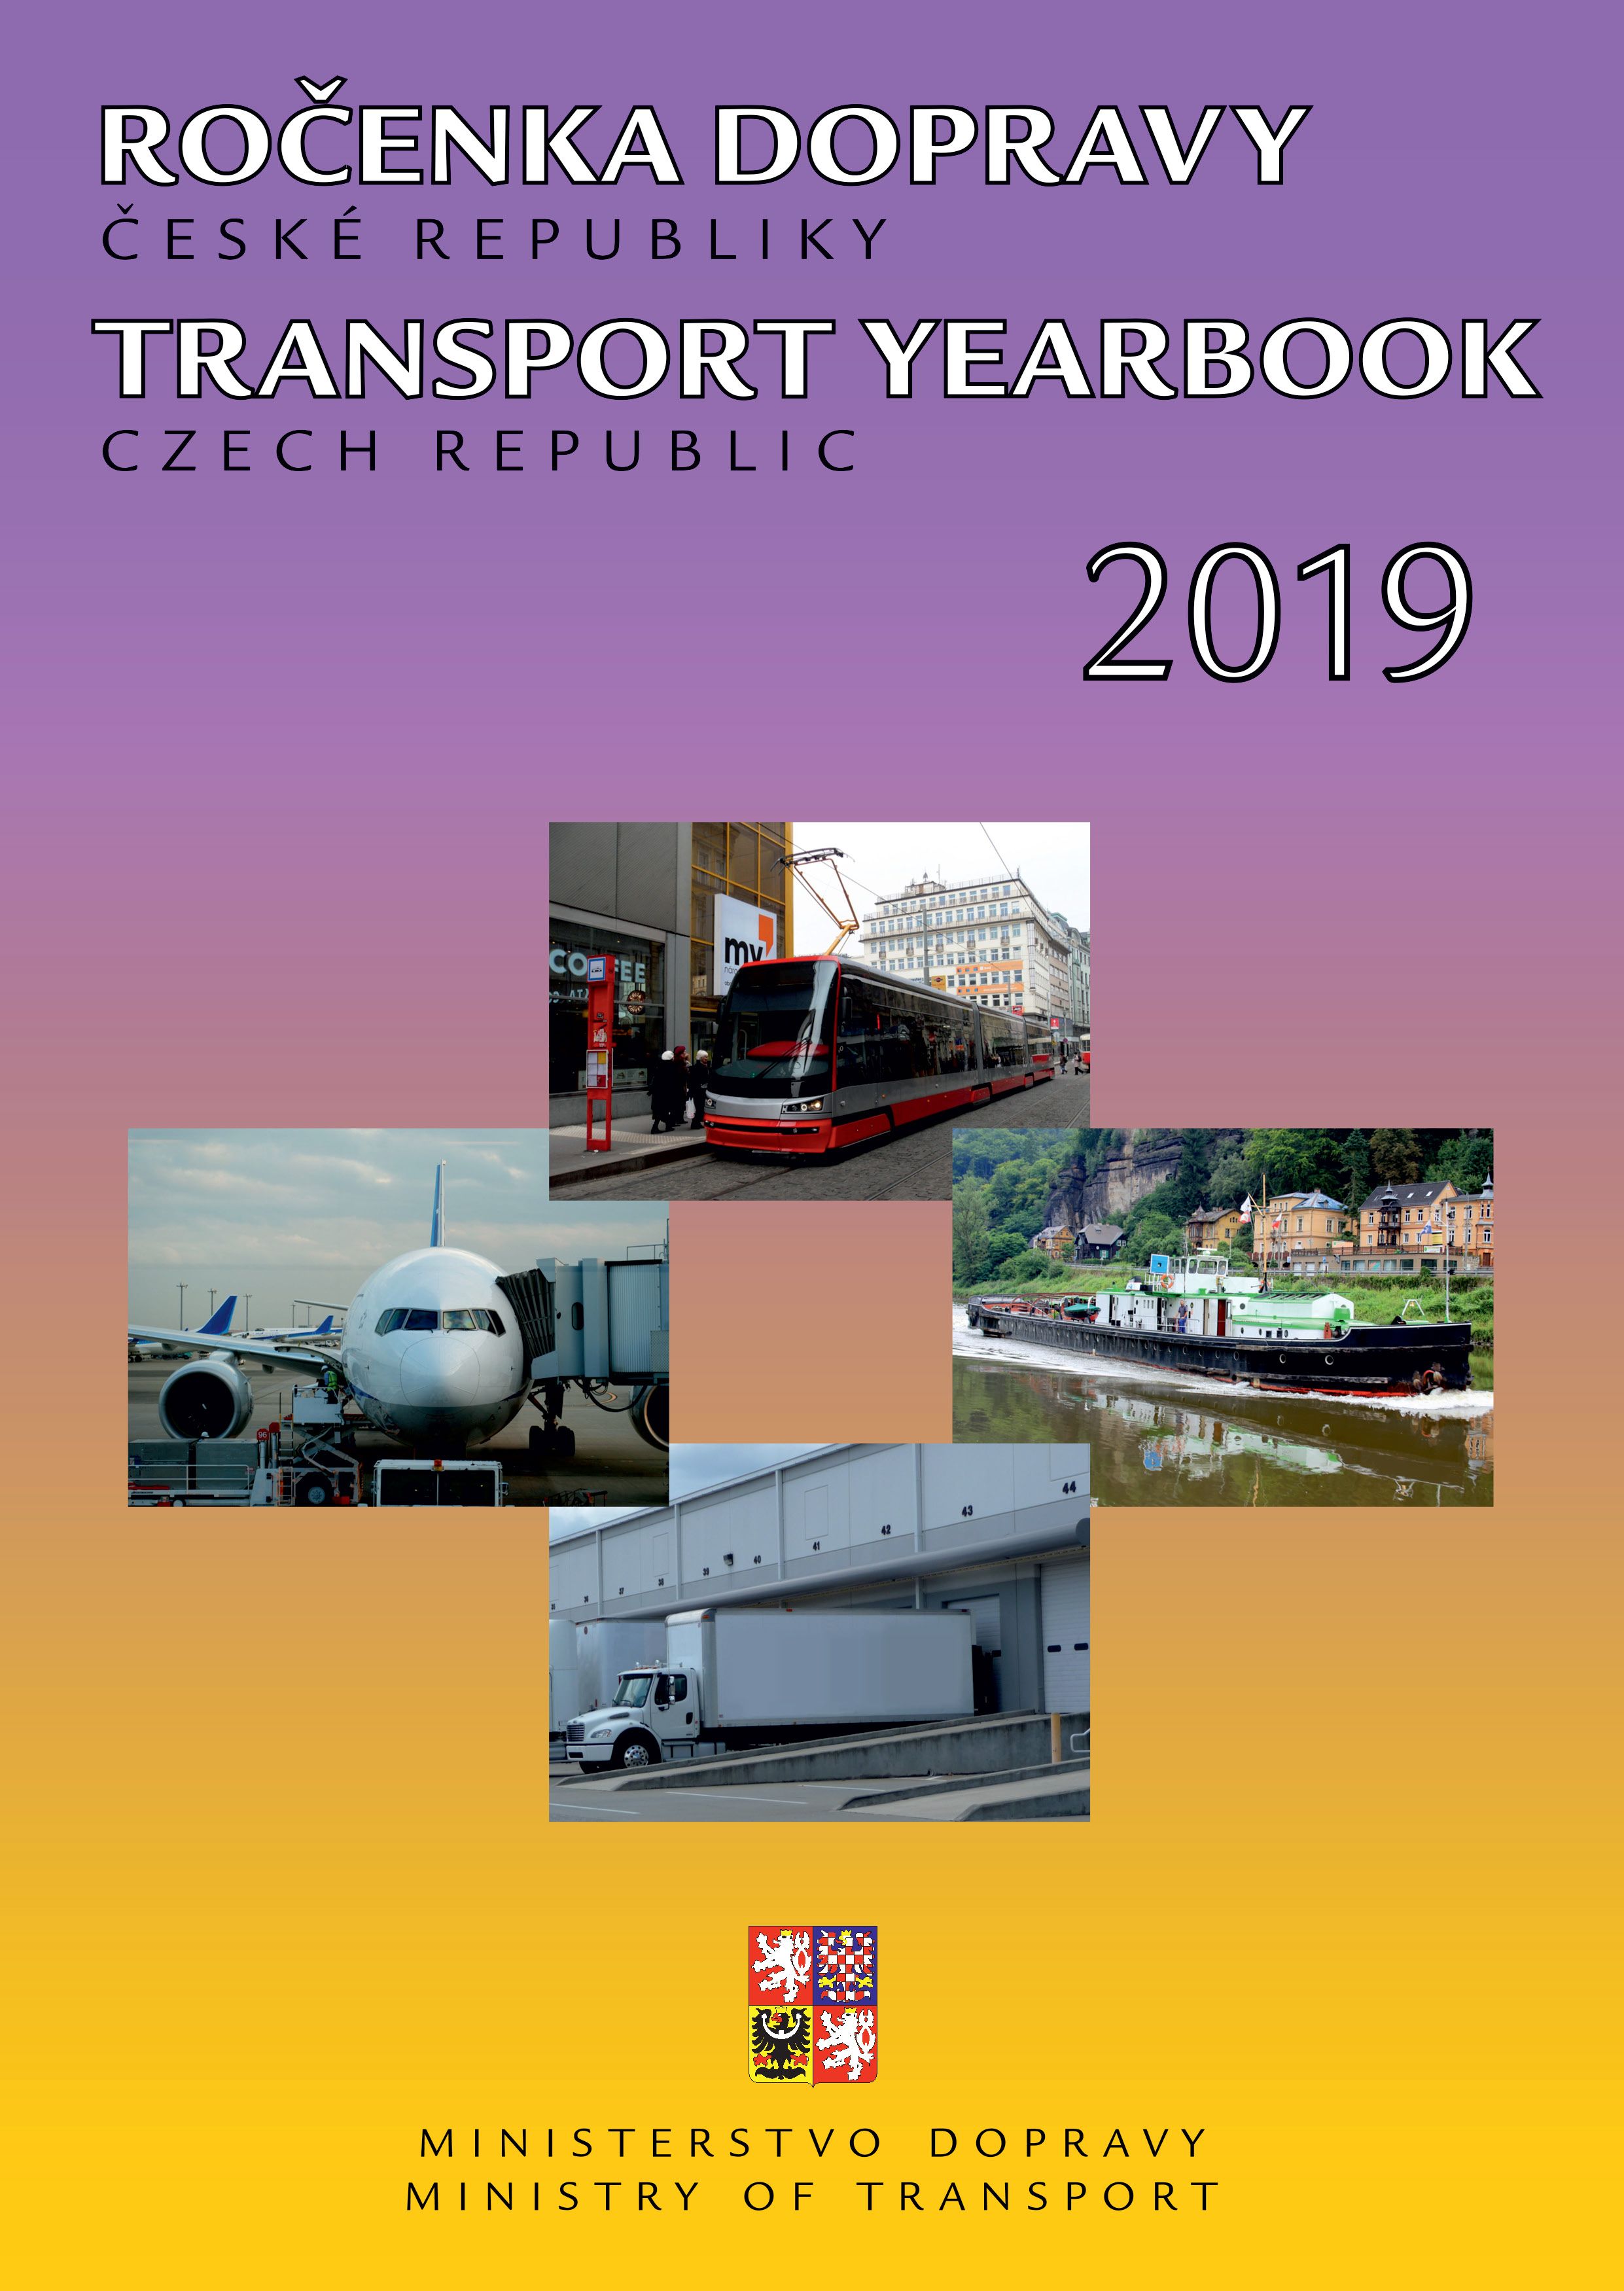 Titulní strana Ročenky dopravy 2019